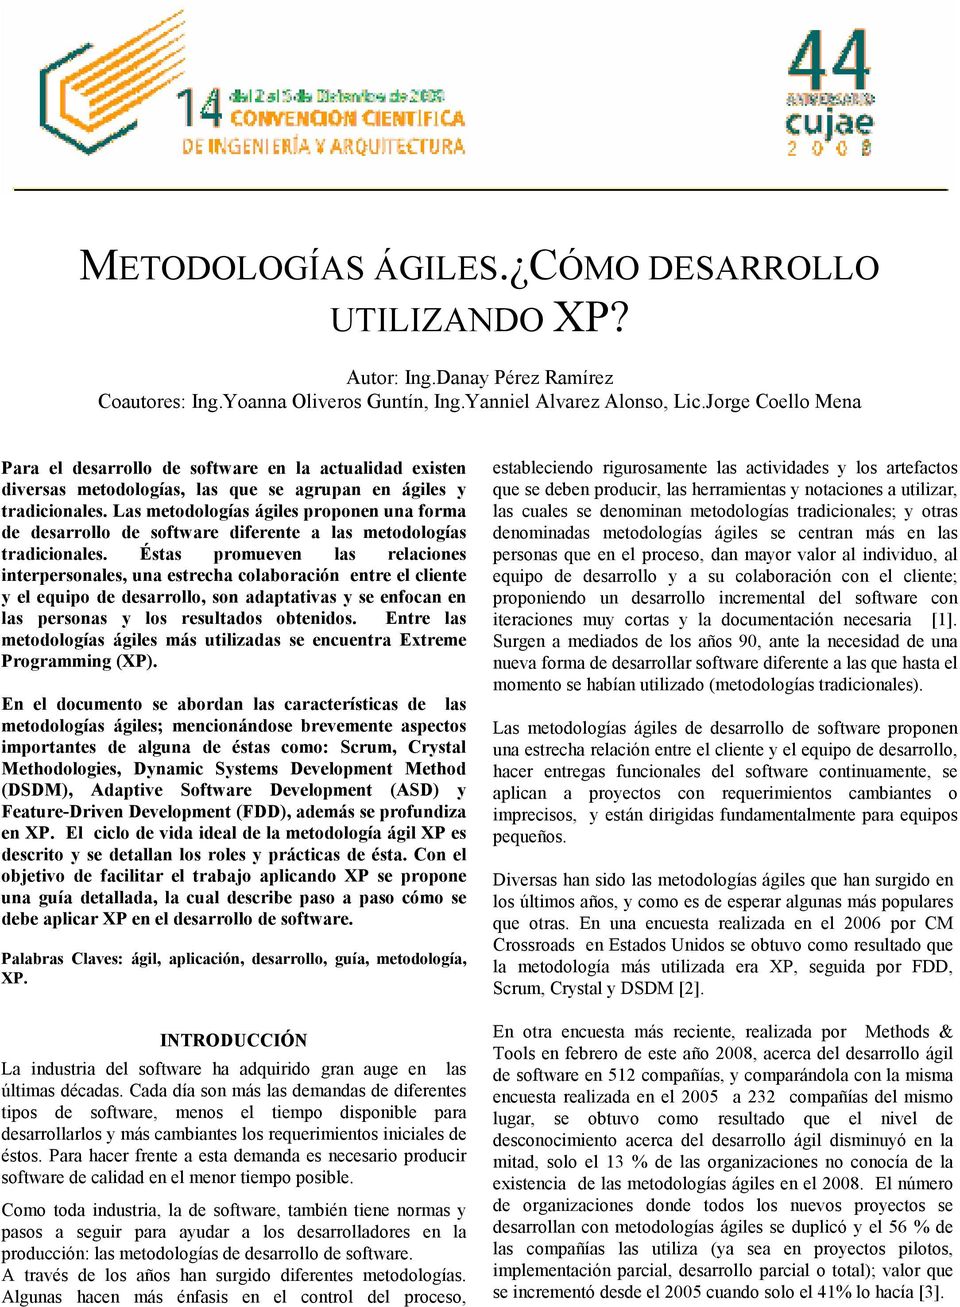 Metodologias Agiles Como Desarrollo Pdf Free Download